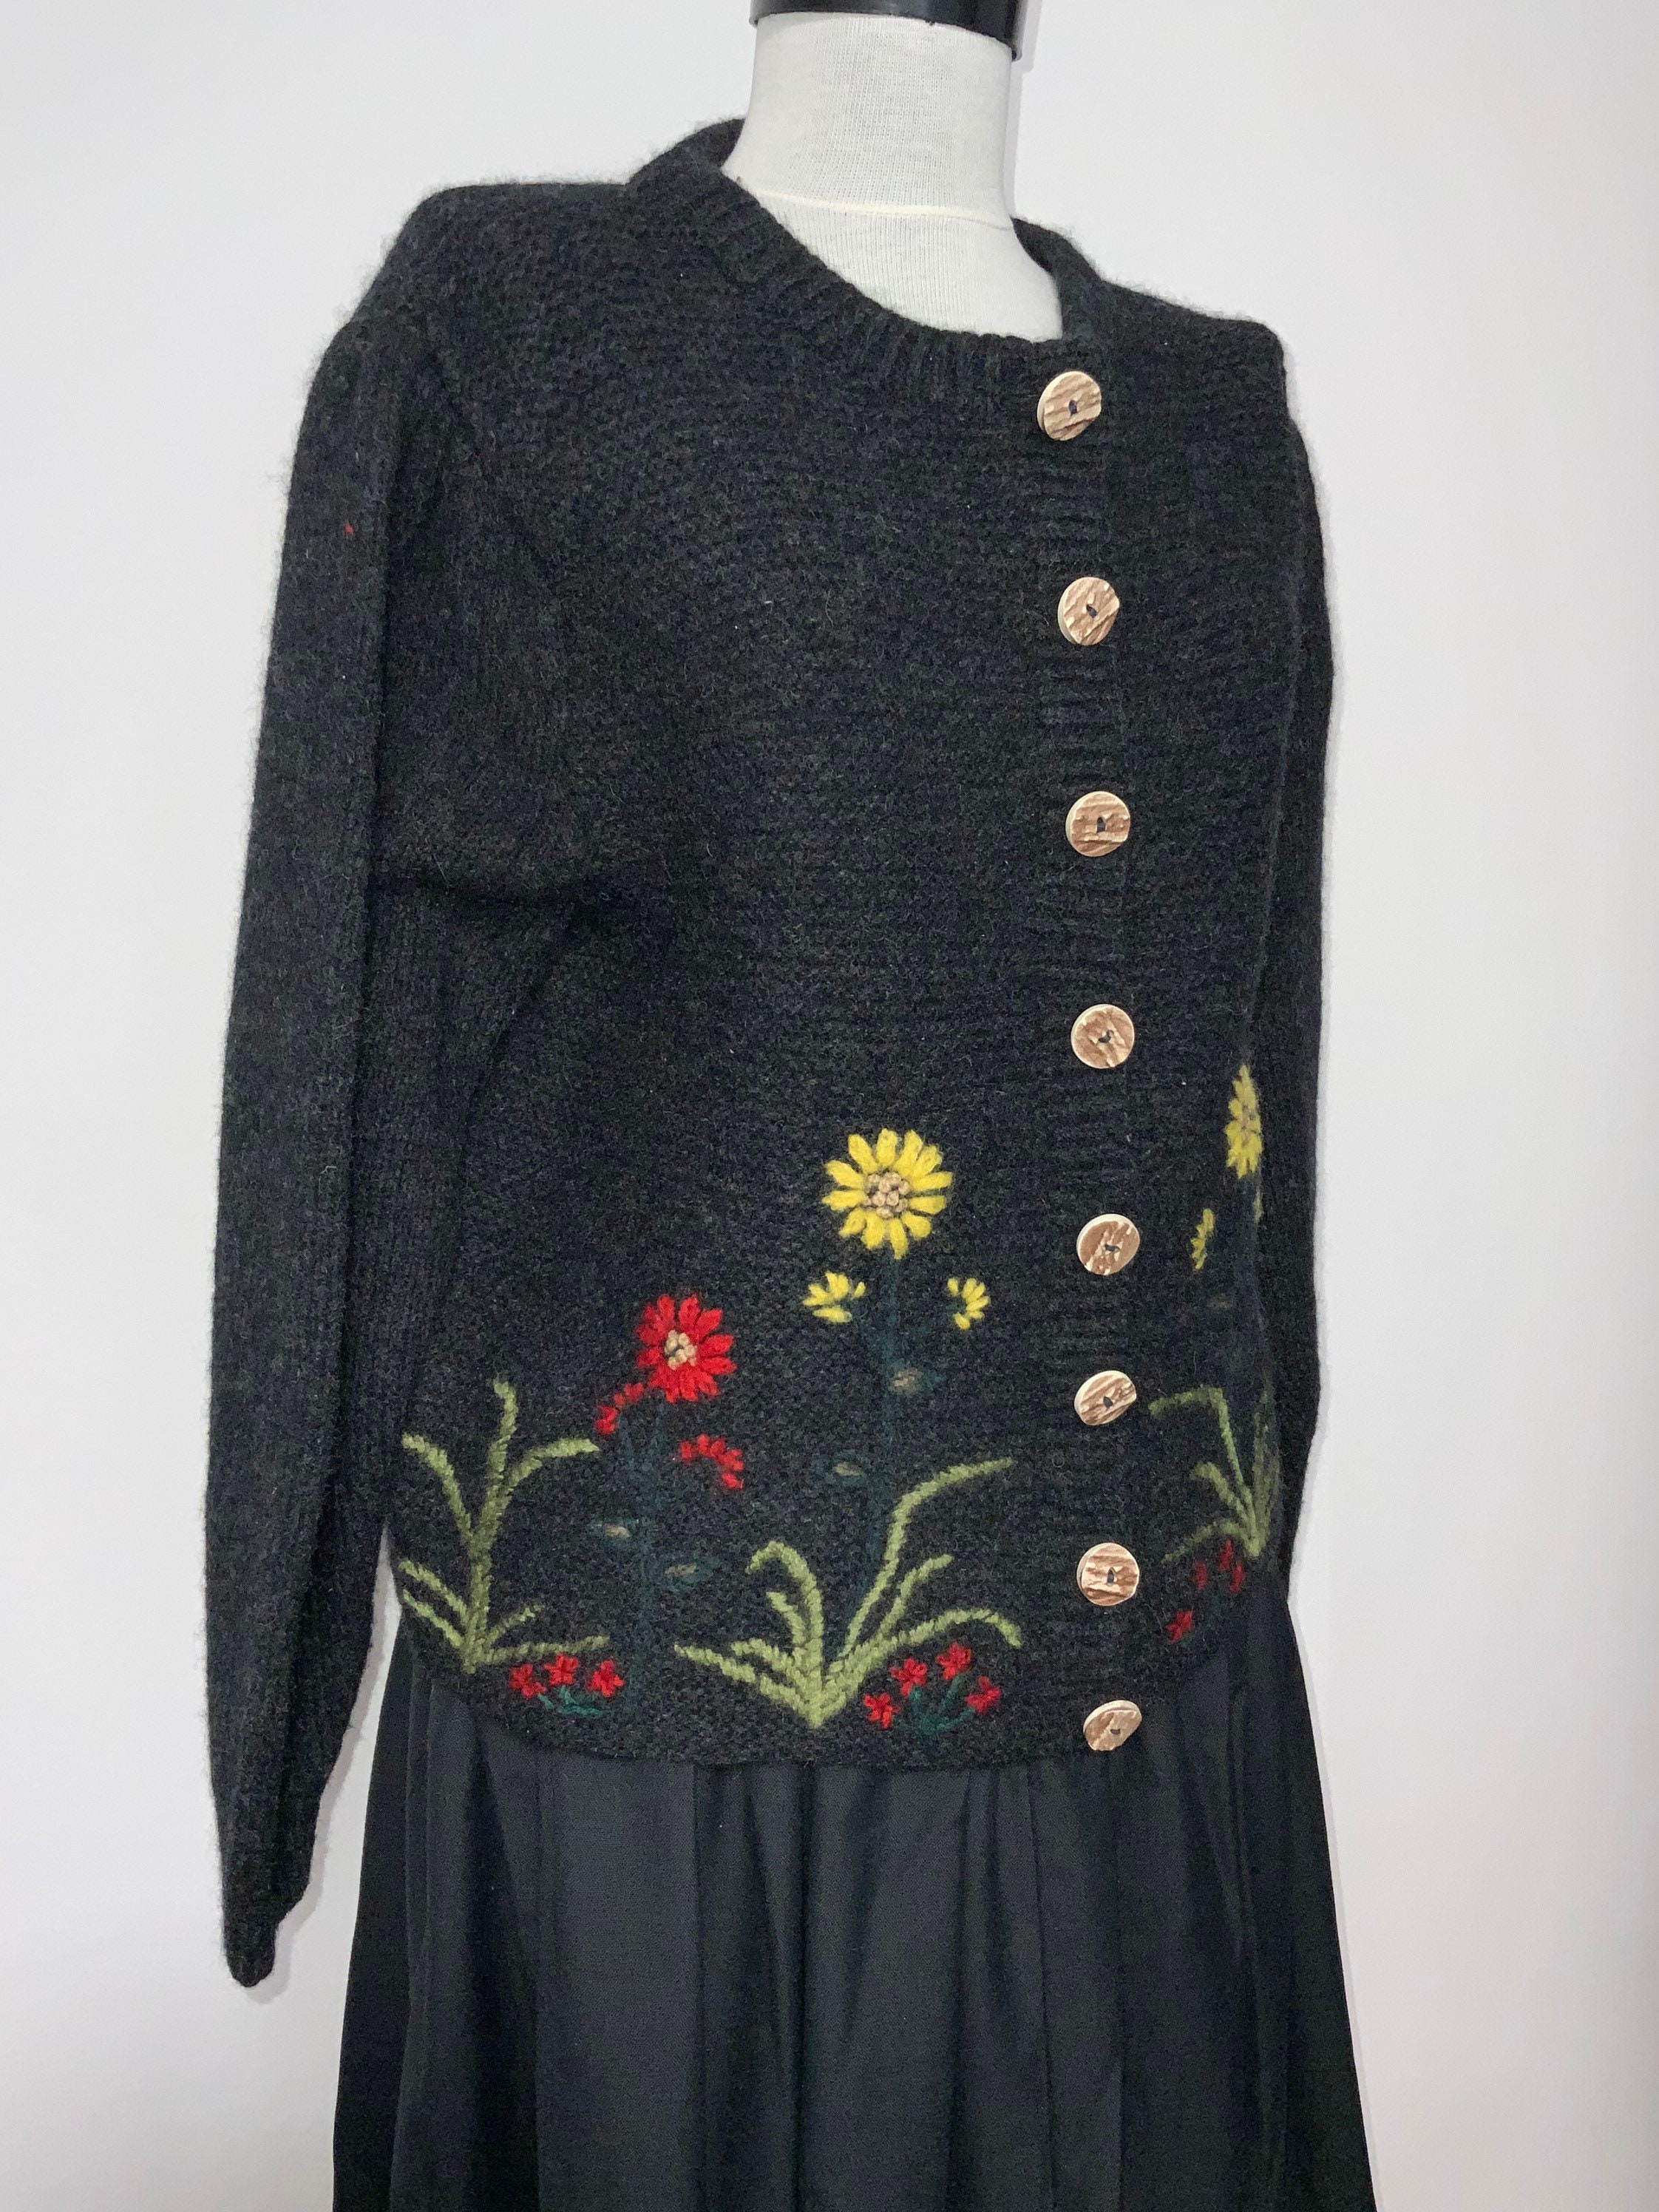 Tyrolean Knit Sweater Wool Sweater Austrian Cardigan - Etsy